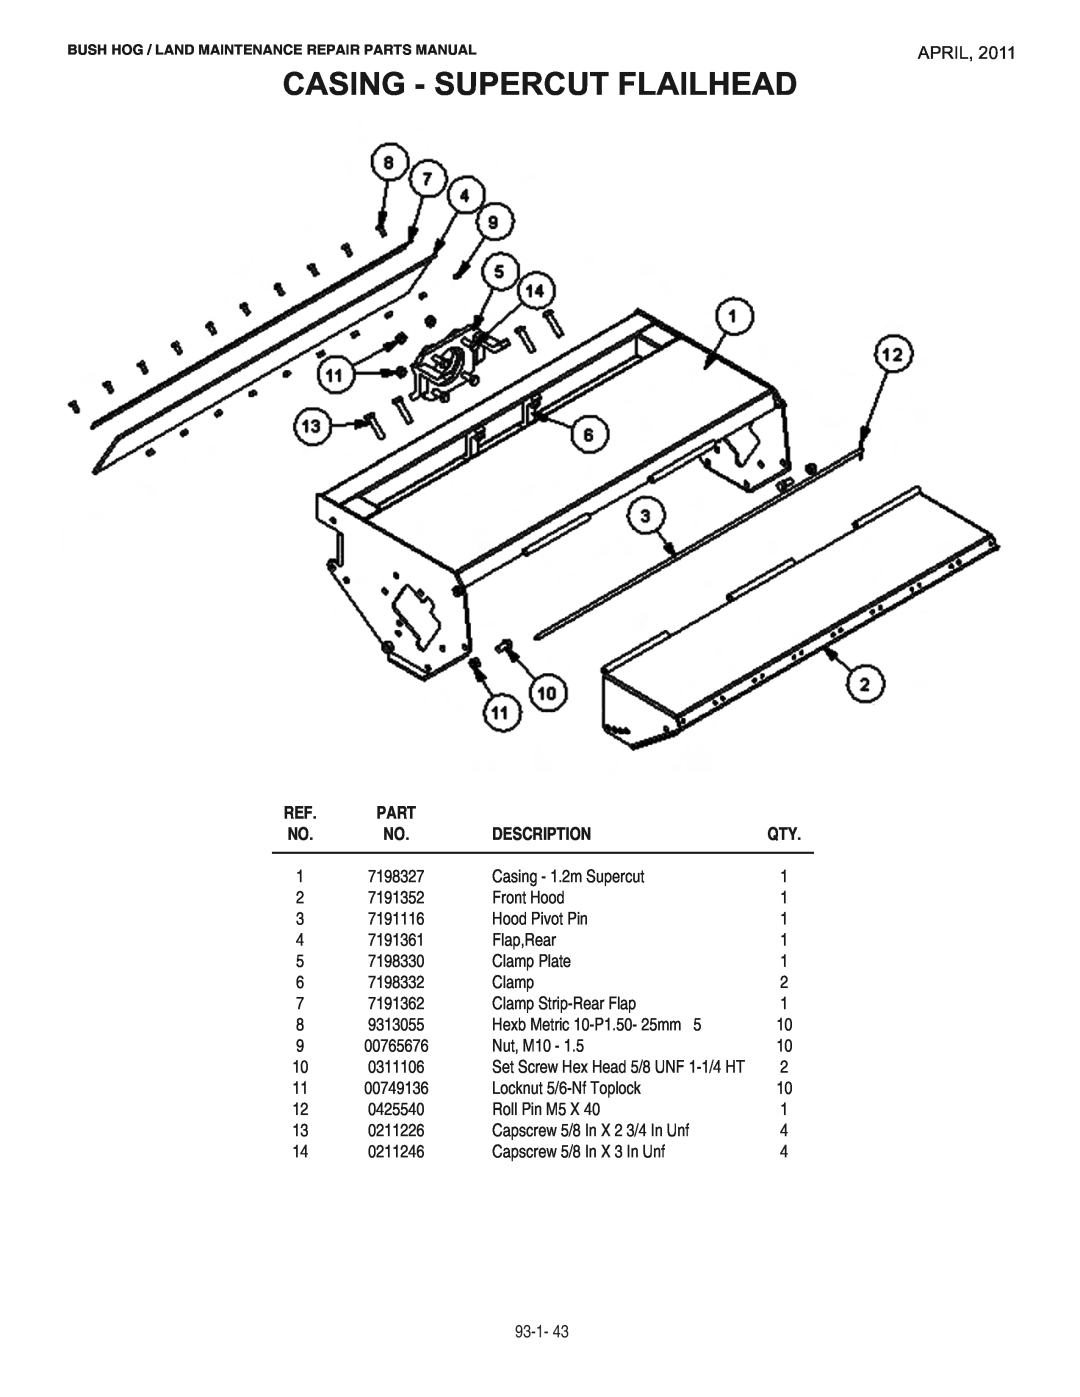 Bush Hog RMB1865E manual Casing - Supercut Flailhead, April, Description 